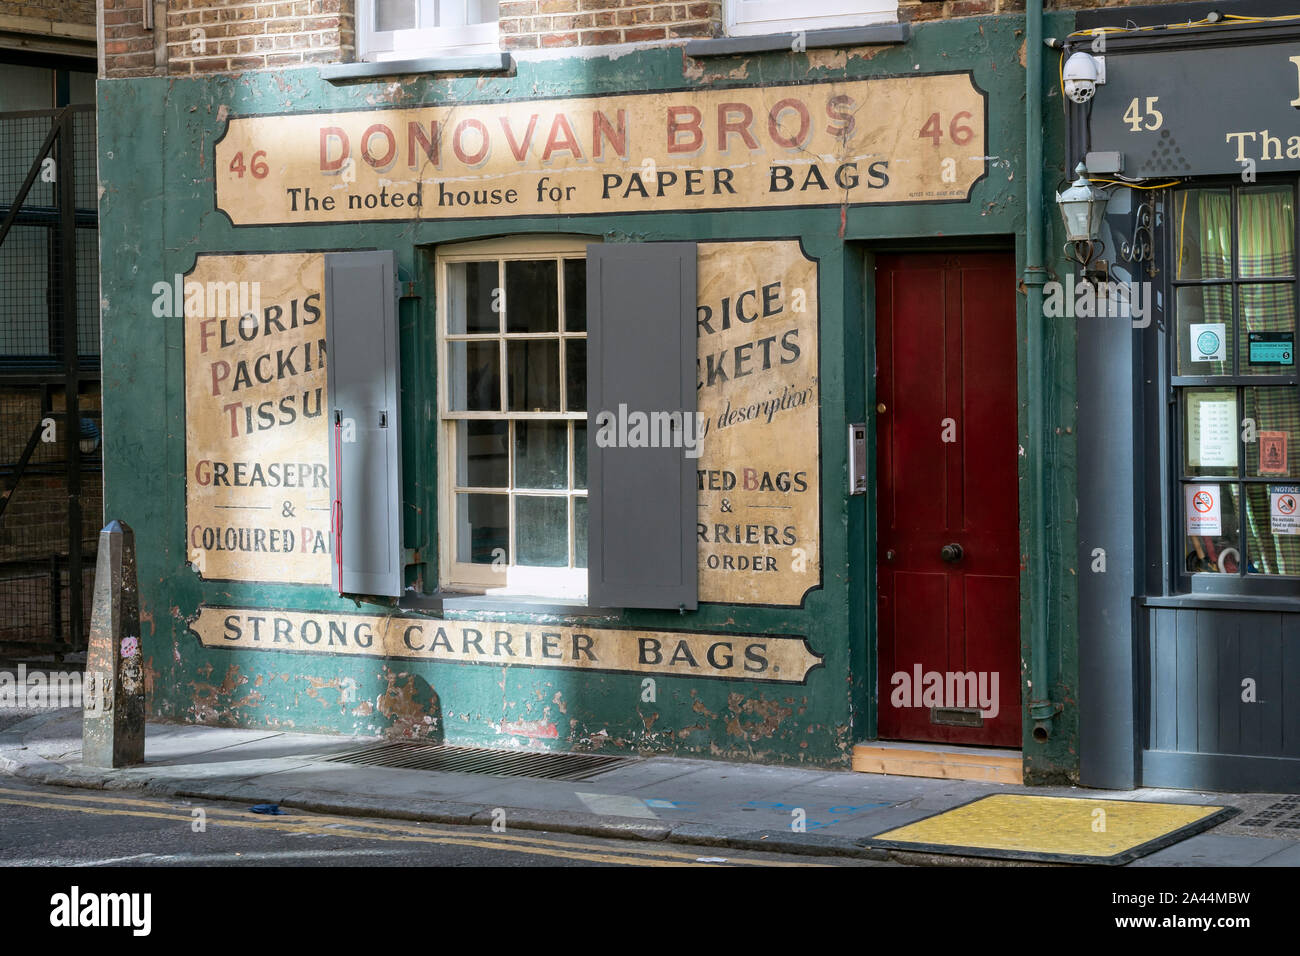 LONDON, Großbritannien - 16. SEPTEMBER 2018: Donovan Bros Papiertüten-Geschäft in der Crispin Street in der Spitalfields-Gegend Stockfoto